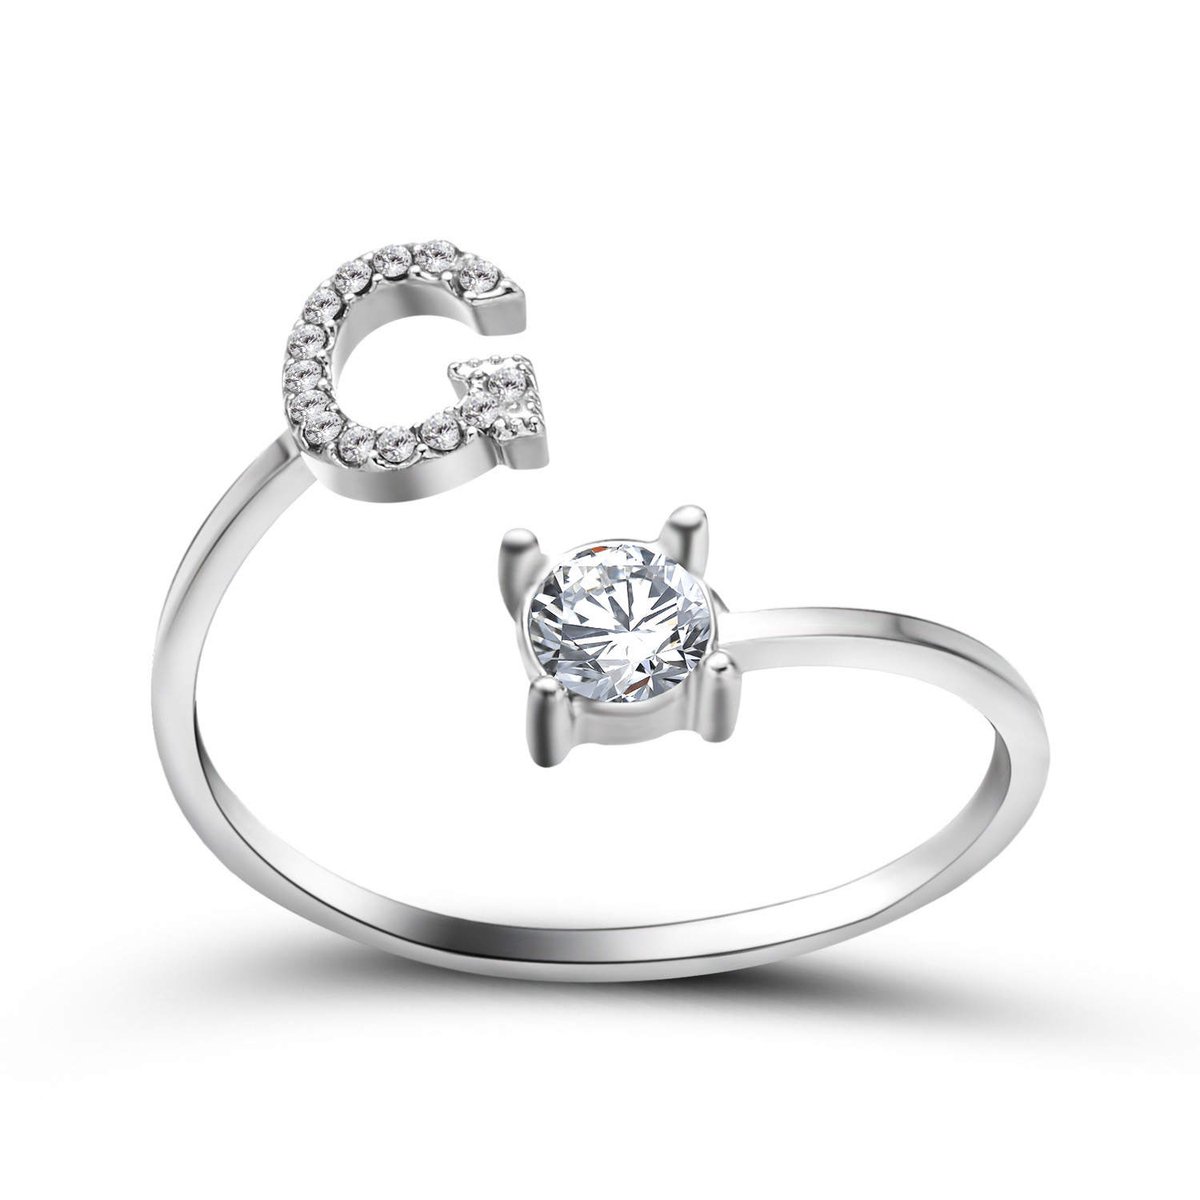 Ring met letter G - Ring met steen - Aanschuifring - Zilver kleurig - Ring Zilver dames - Cadeau voor vriendin - Vrouw - Sieraad meisje - Mooie ring tieners - Alfabet ring G - Ring met initiaal